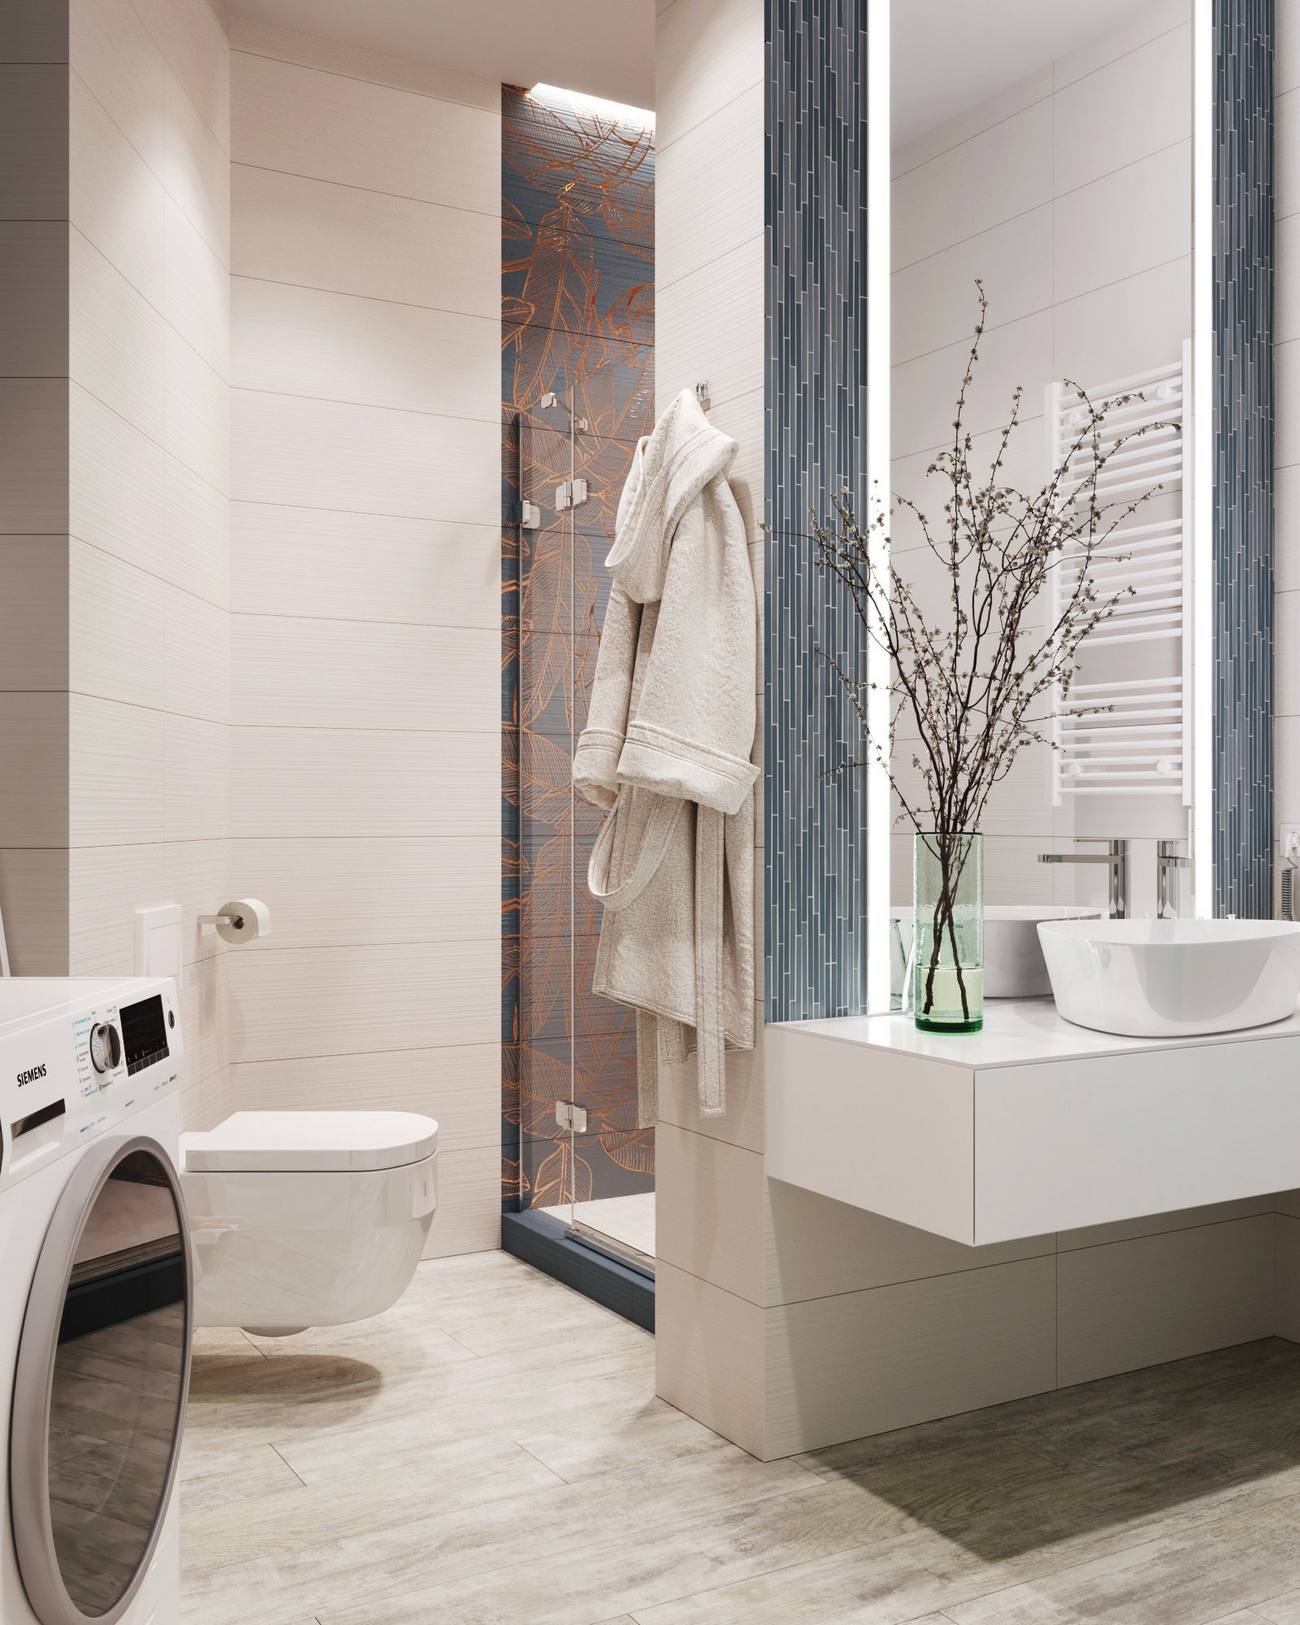 Phòng tắm và nhà vệ sinh được thiết kế với bức tường ốp gạch theo chiều ngang, cộng với tấm gương lớn tích hợp đèn LED trên tường bồn rửa cho cảm giác căn phòng rộng rãi hơn nhờ “đánh lừa” thị giác. 